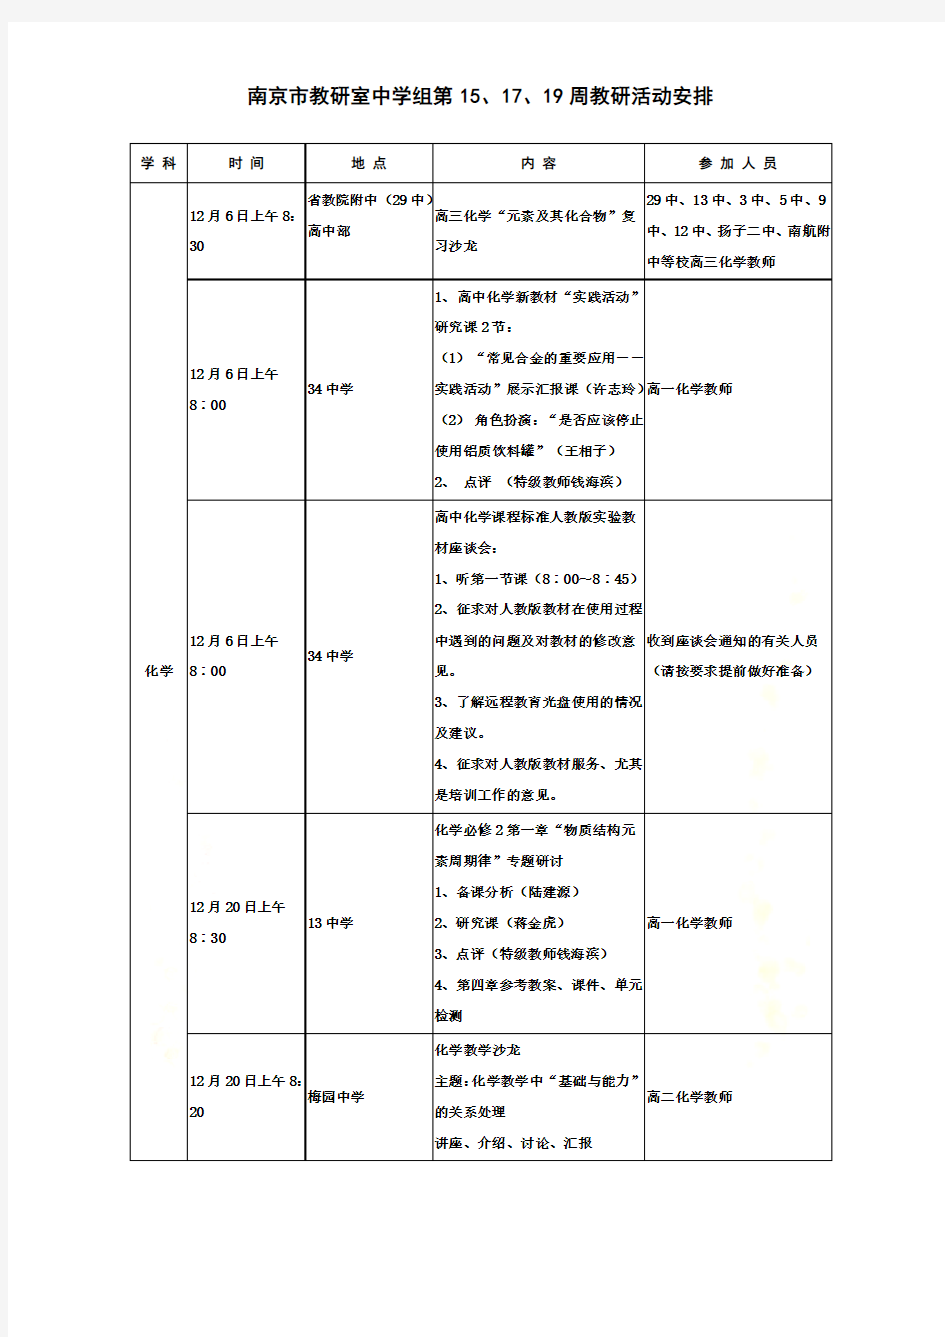 南京市教研室中学组第15、17、19周教研活动安排